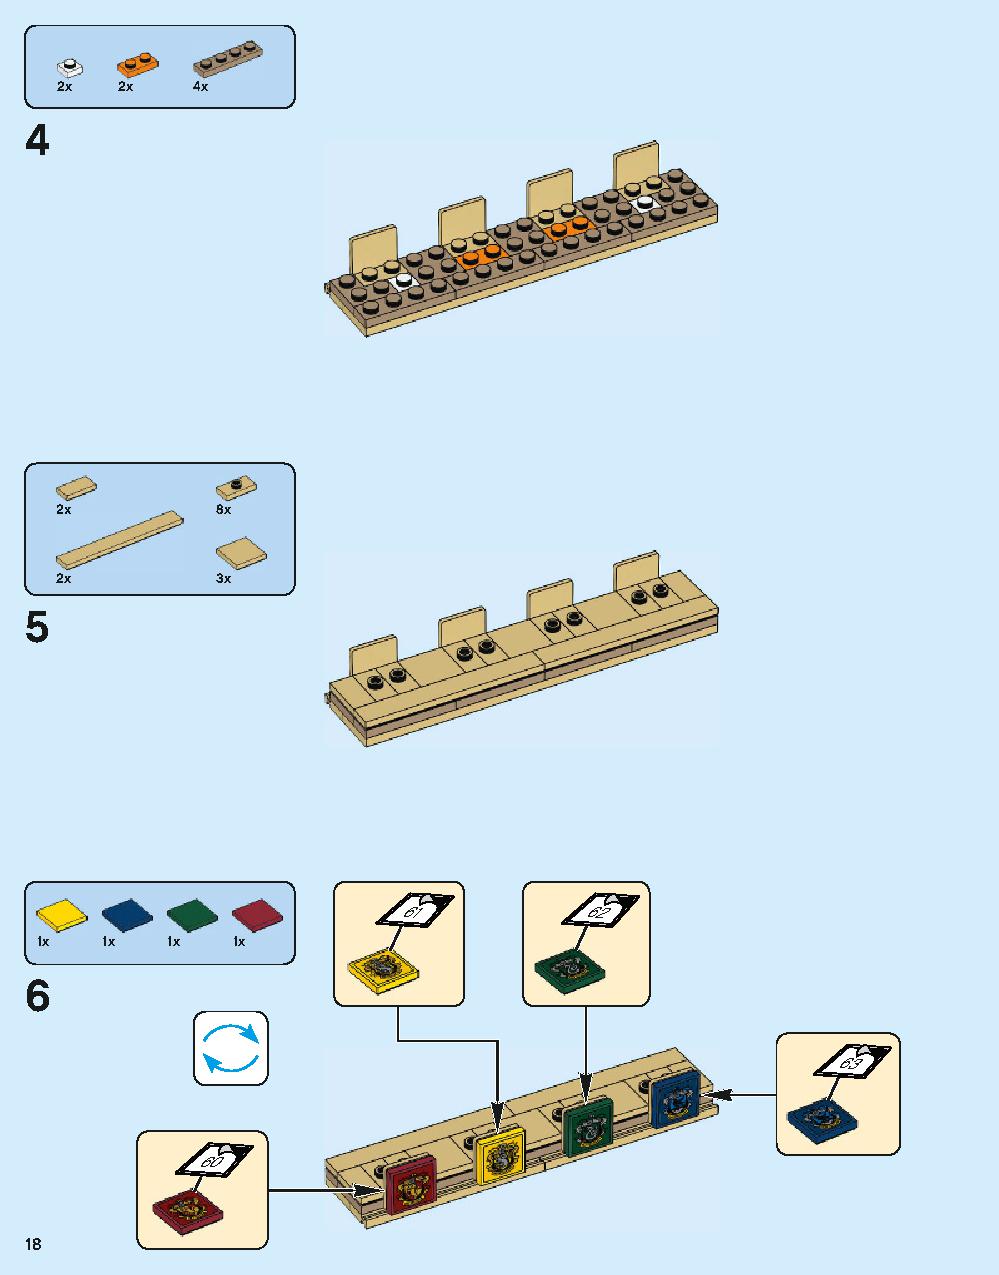 ホグワーツ城 71043 レゴの商品情報 レゴの説明書・組立方法 18 page